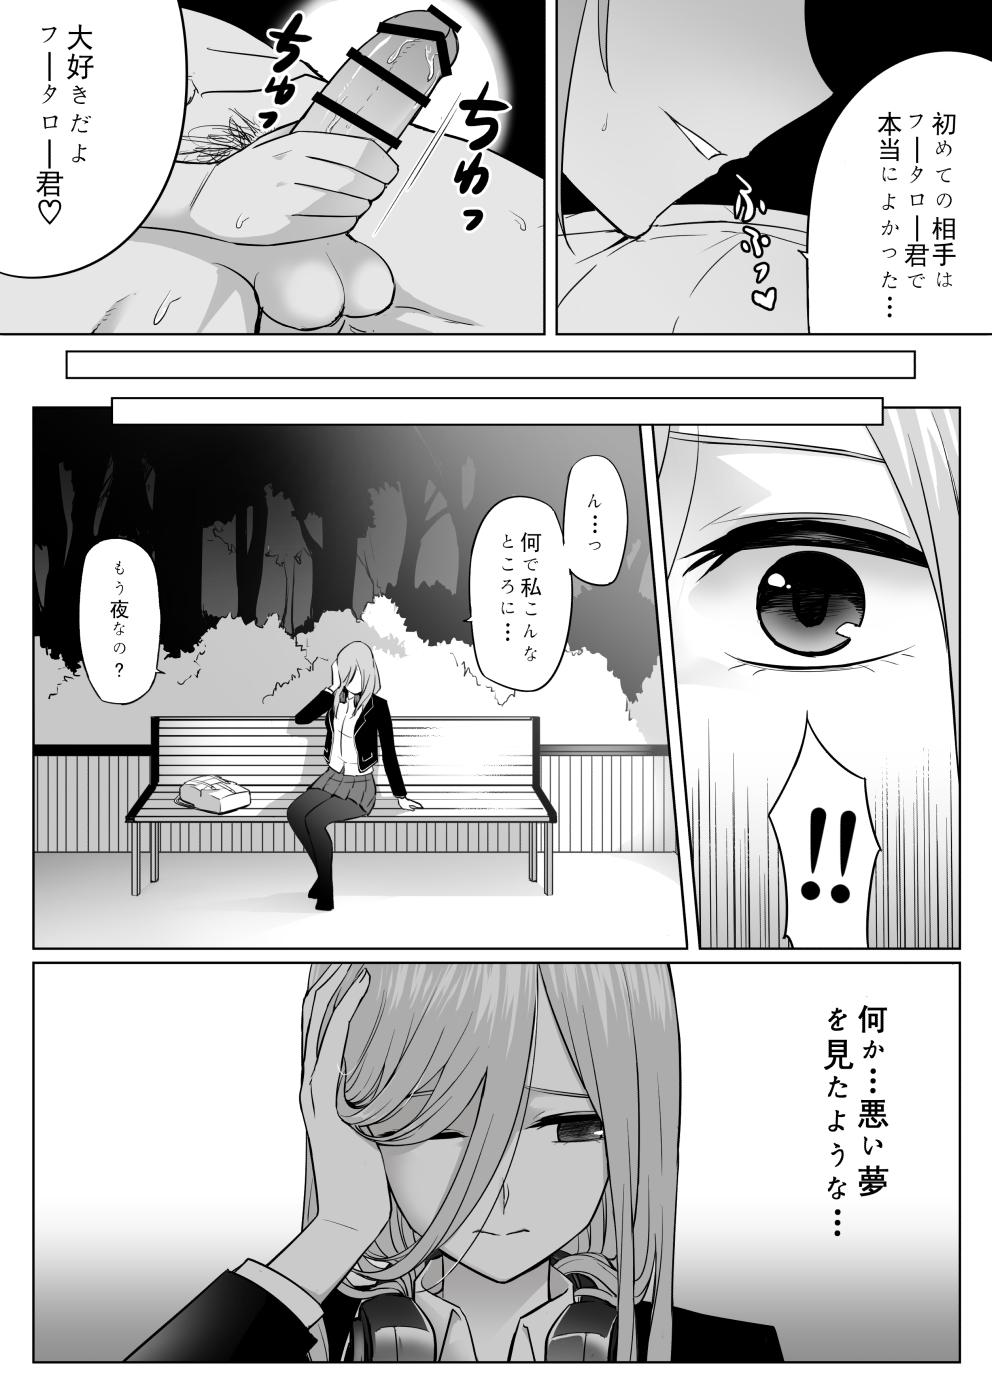 Candid Nakano ke bijin shimai shojo soushitsu - Gotoubun no hanayome Doll - Page 30